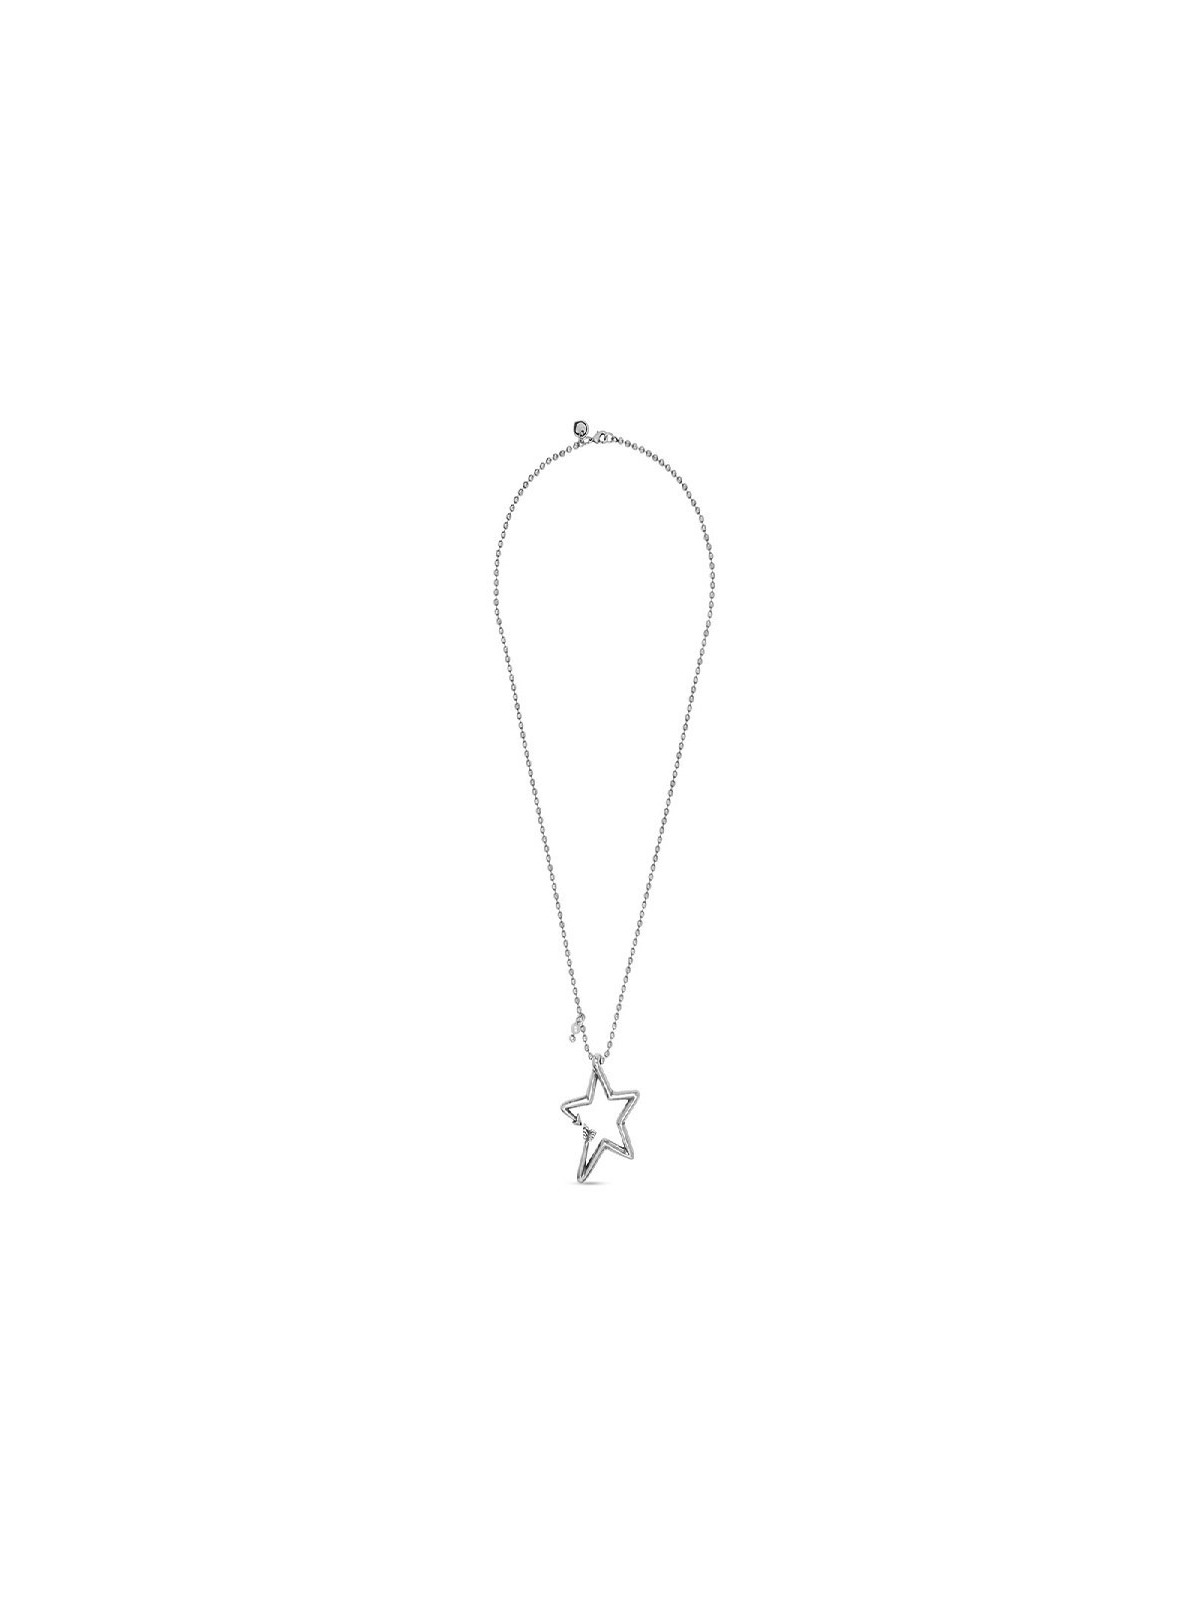 Sautoir Ciclon étoile couleur argent et chaîne boules | 3 vue à plat | Tilleulmenthe boutique de mode femme en ligne